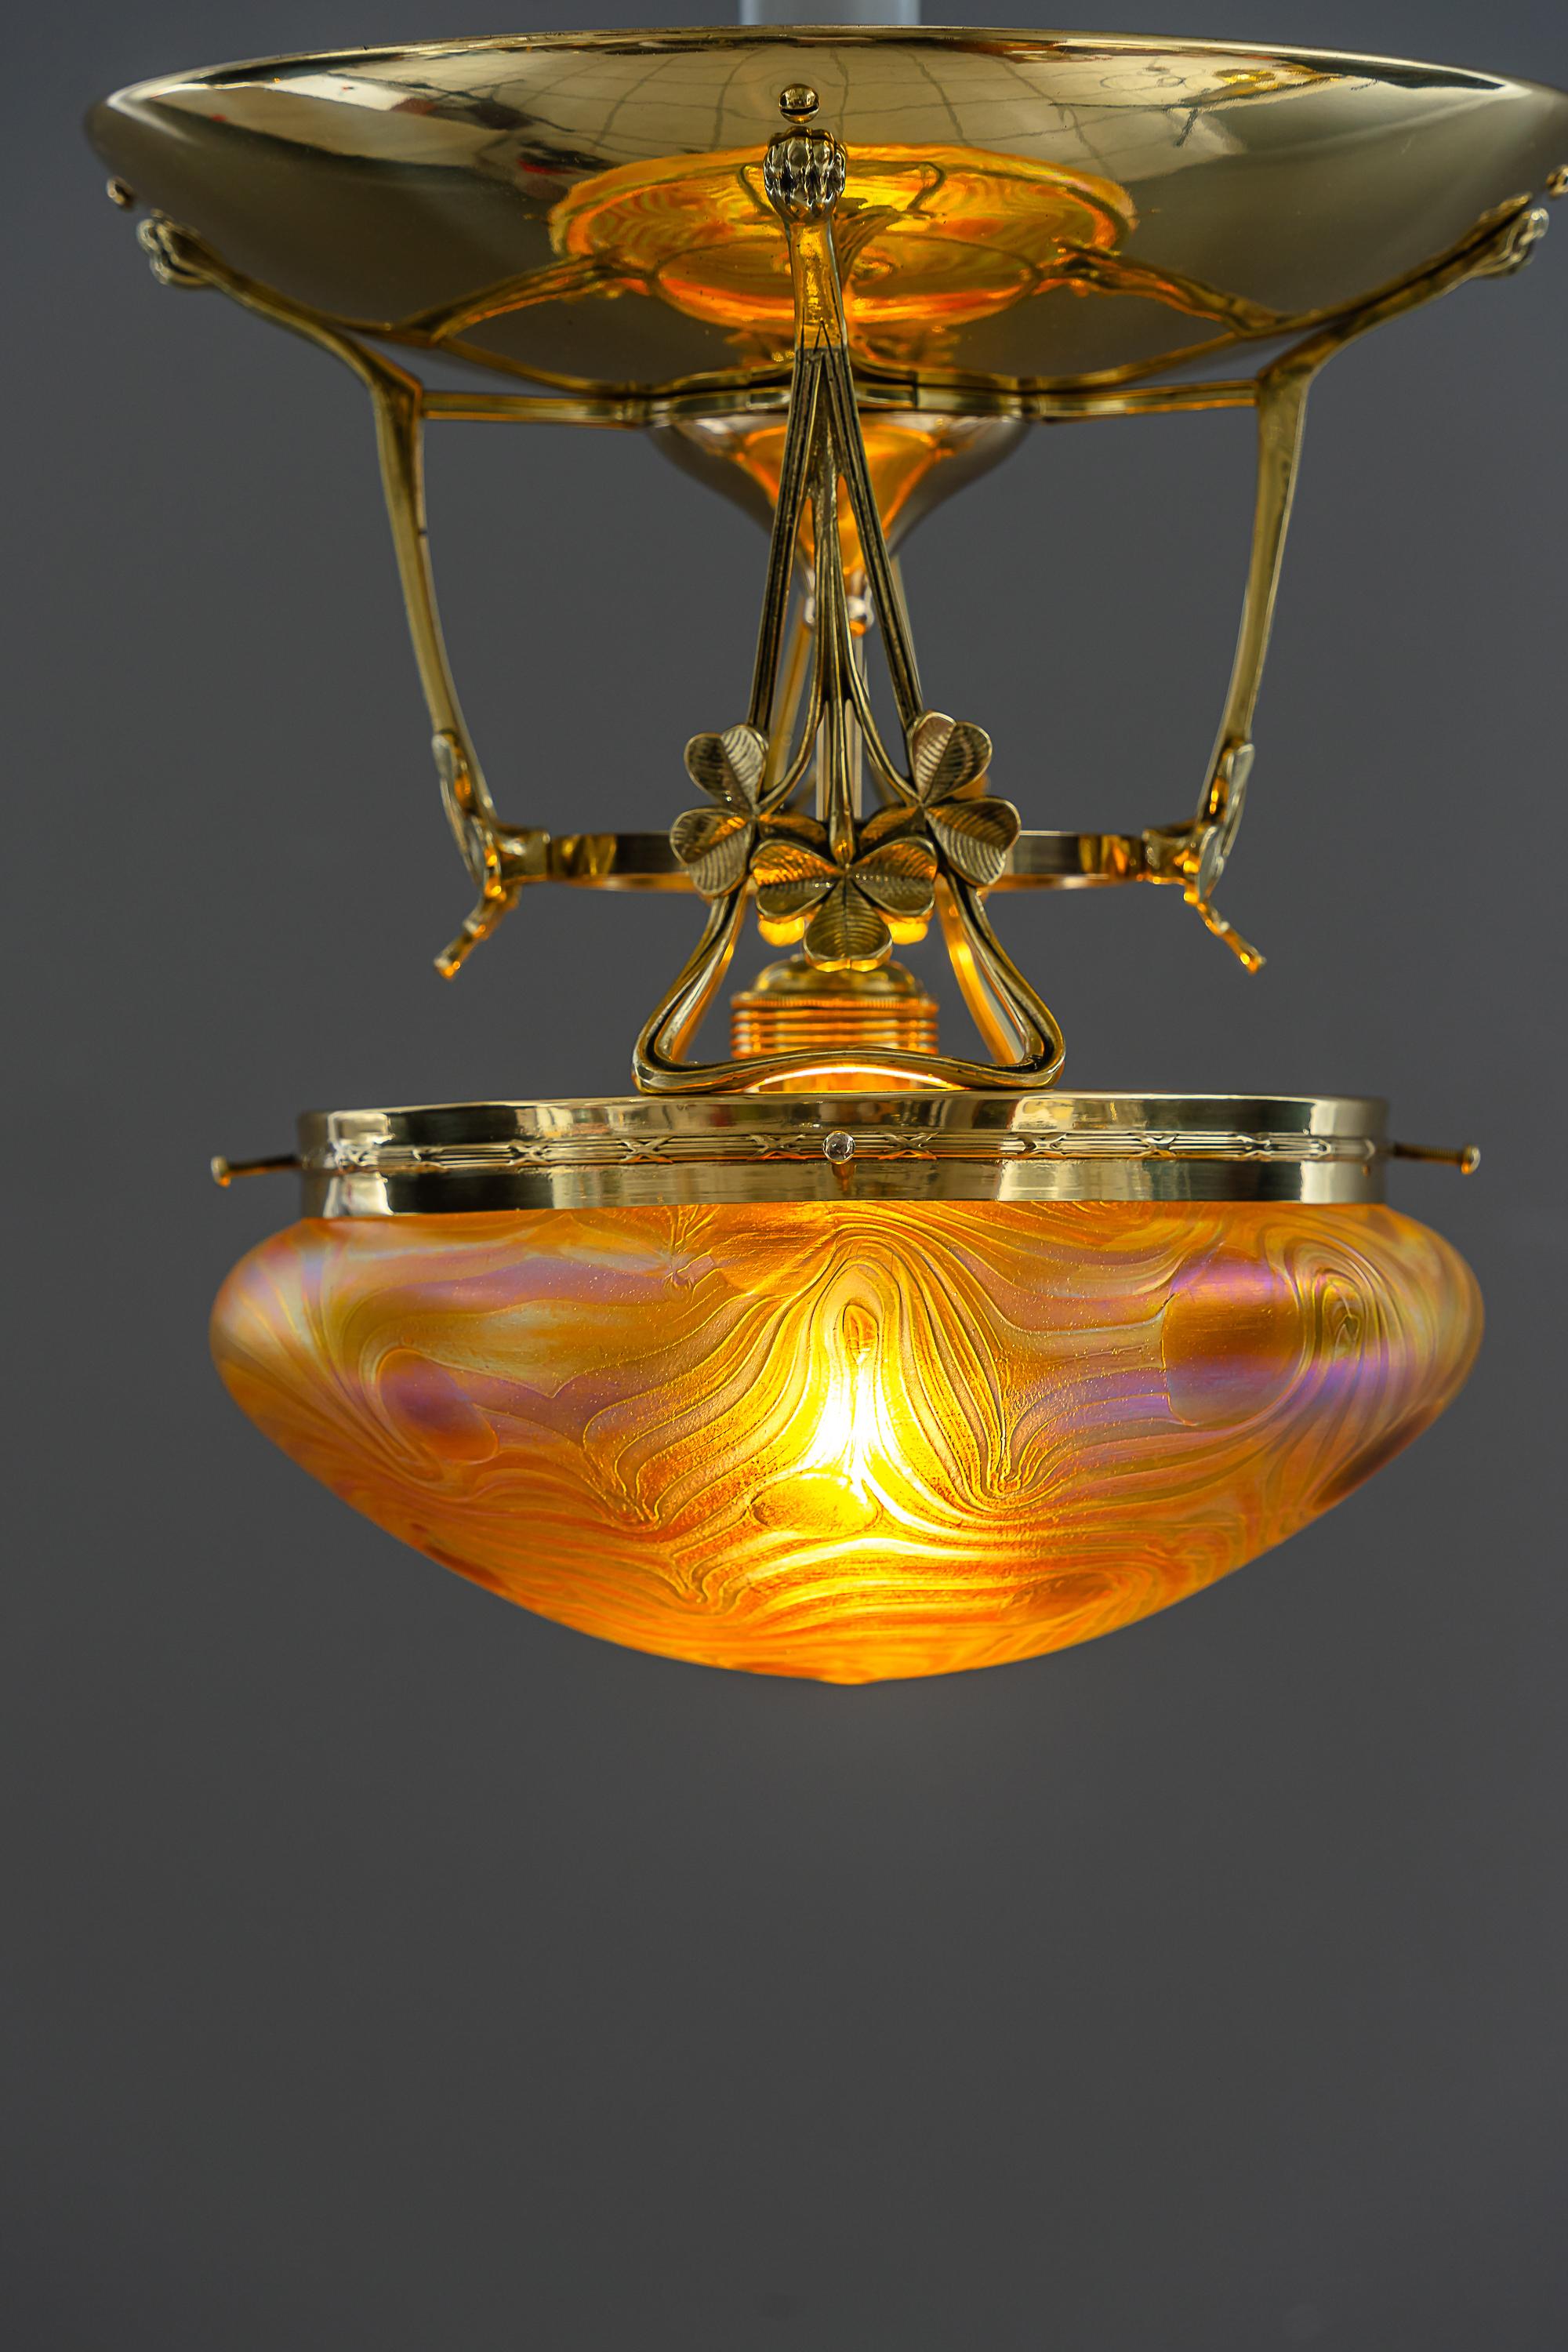 Jugendstil florale Deckenlampe mit Lötzenglasschirm wien um 1908
Schöne Ausführung
Messing poliert und emailliert
